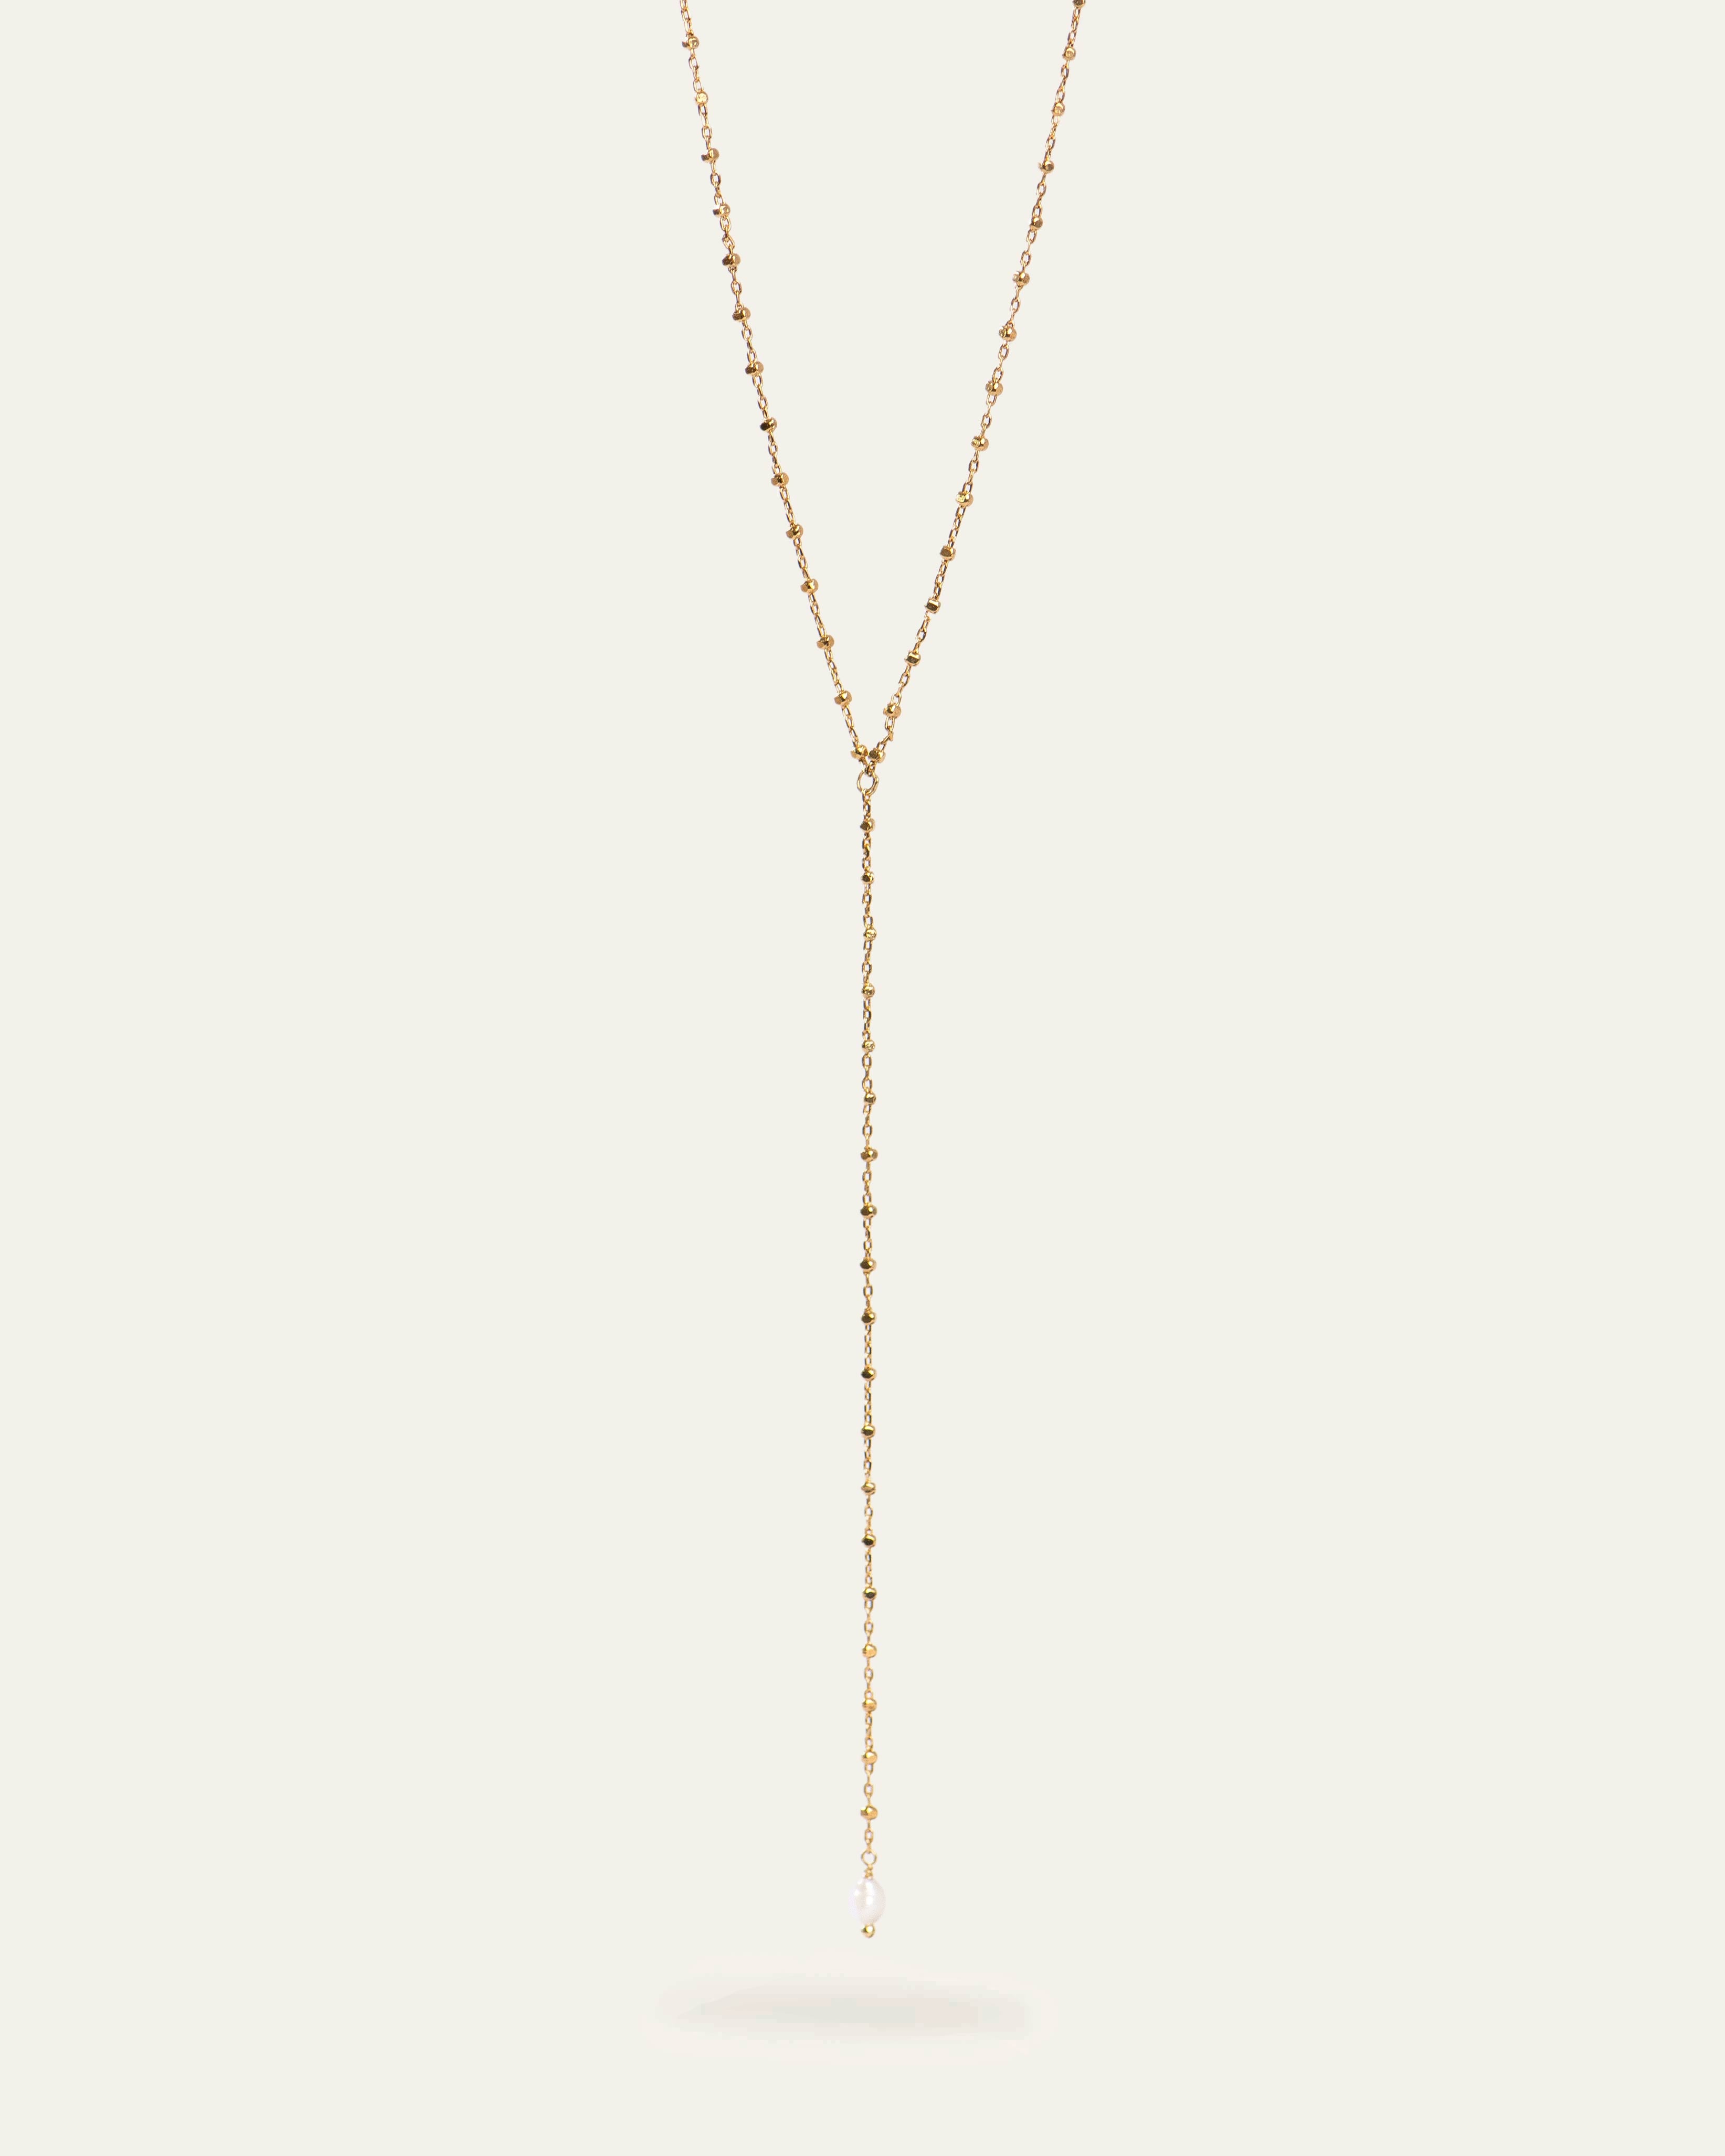 Collier en Y composé d'une chaîne fine avec des petites mailles carrées en plaqué or, et une petite perle de culture ovale made in France.